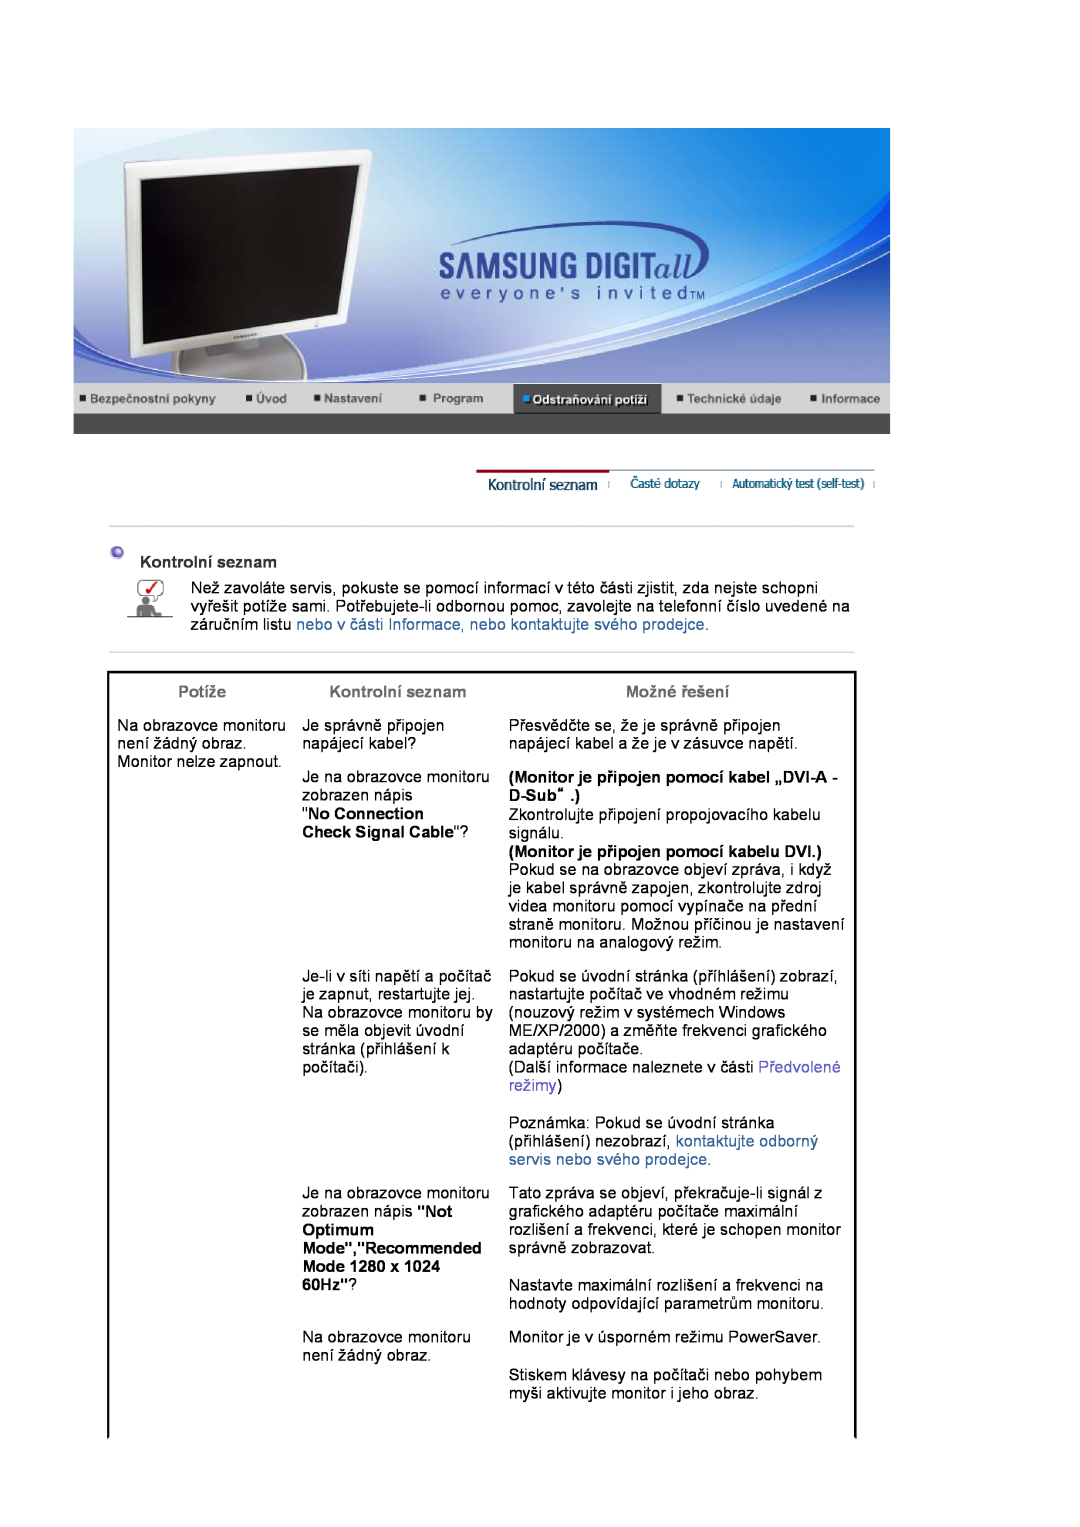 Samsung LS19HJDQFV/EDC, LS17HJDQHV/EDC Kontrolní seznam, Monitor je připojen pomocí kabel „DVI-A, D-Sub“, No Connection 